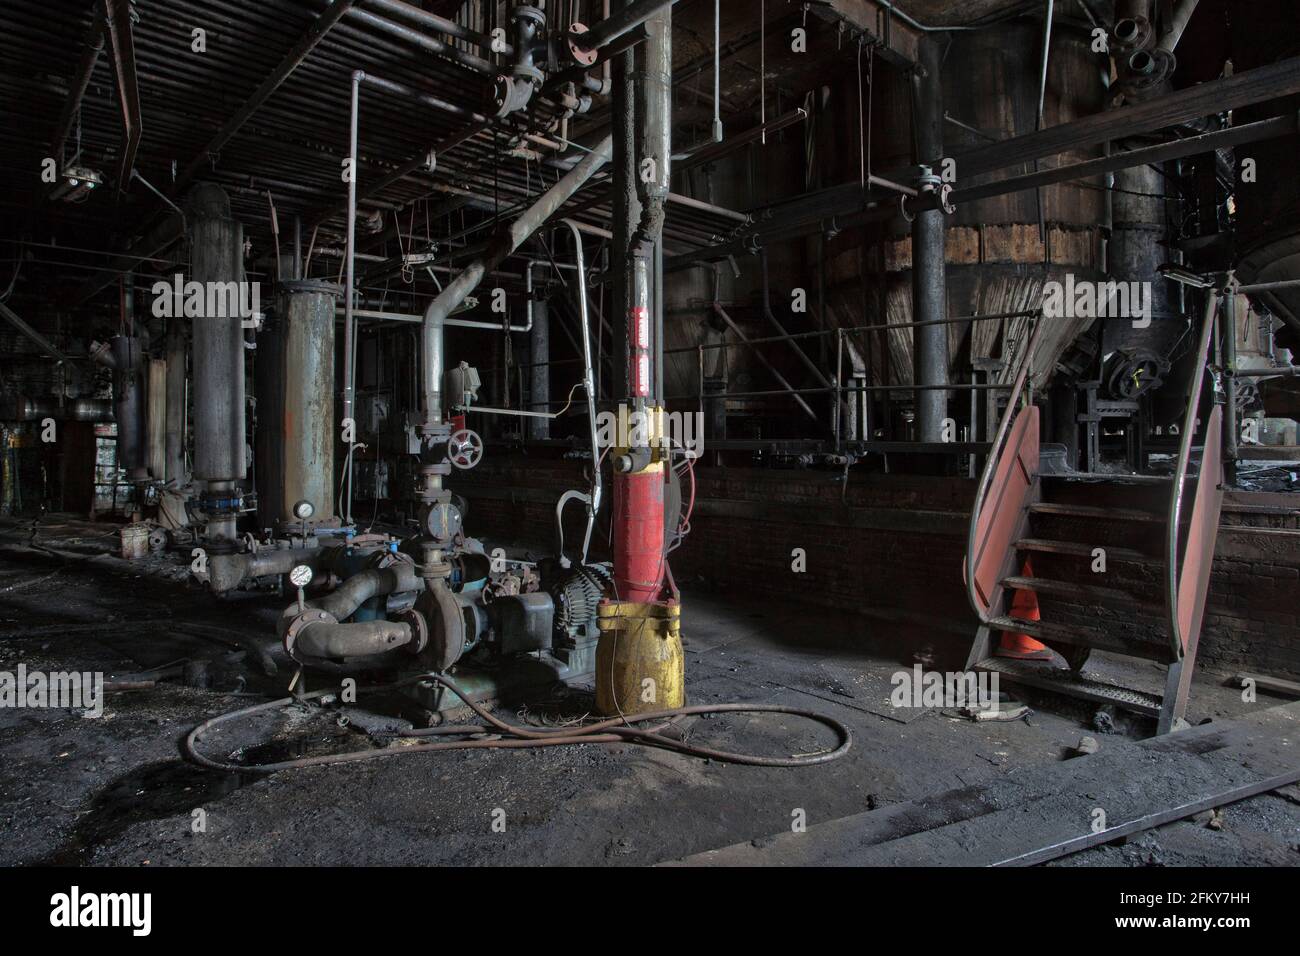 Interno di una fabbrica industriale decadente abbandonata Foto Stock